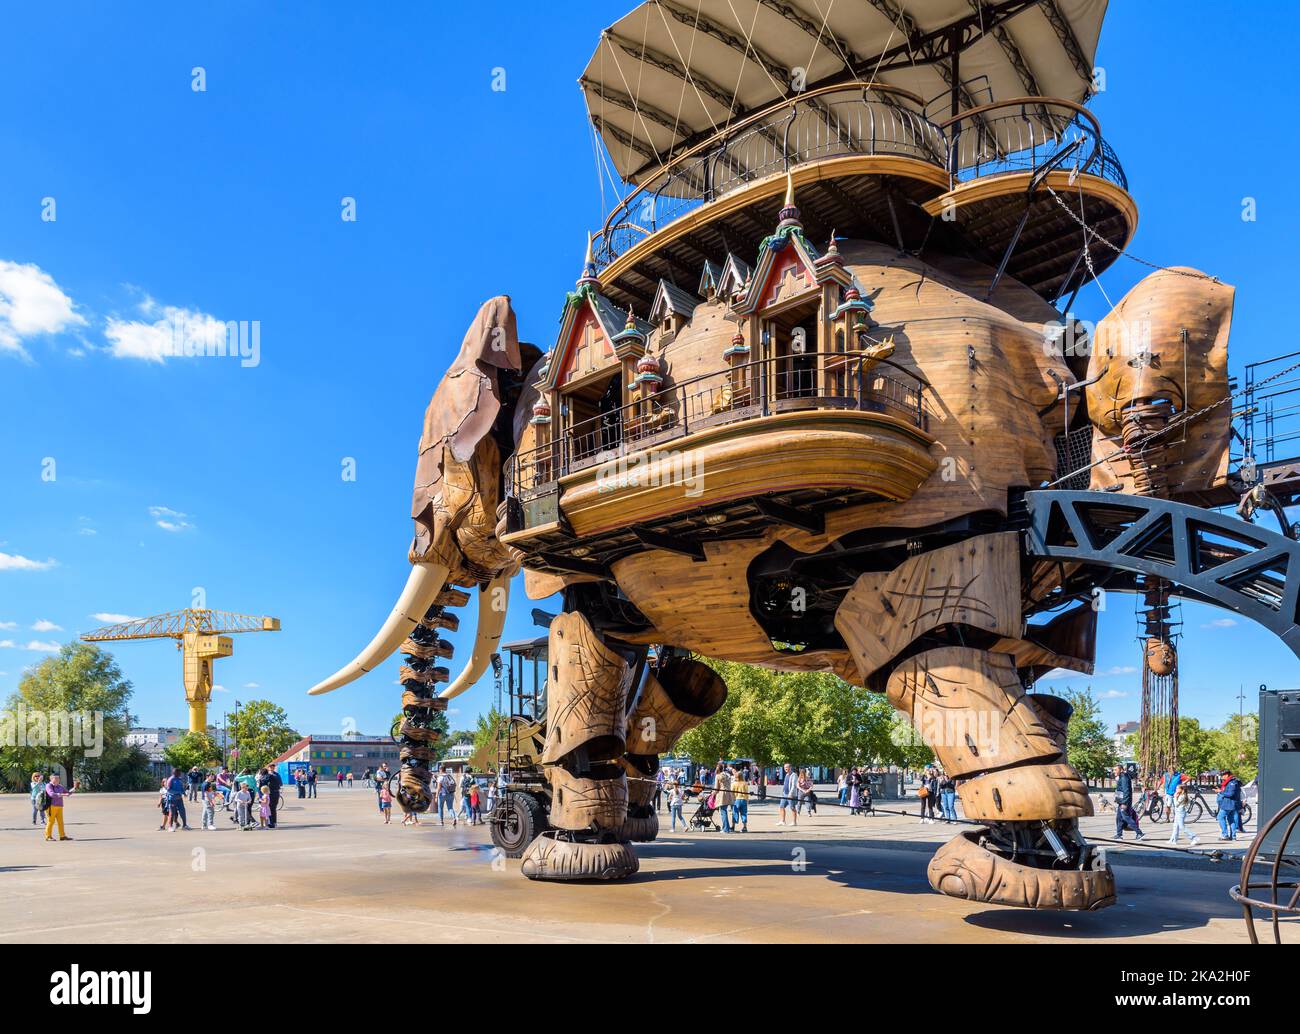 La marionnette géante du Grand Eléphant, qui fait partie des machines de l'attraction de l'île de Nantes, avec la grue jaune Titan au loin. Banque D'Images